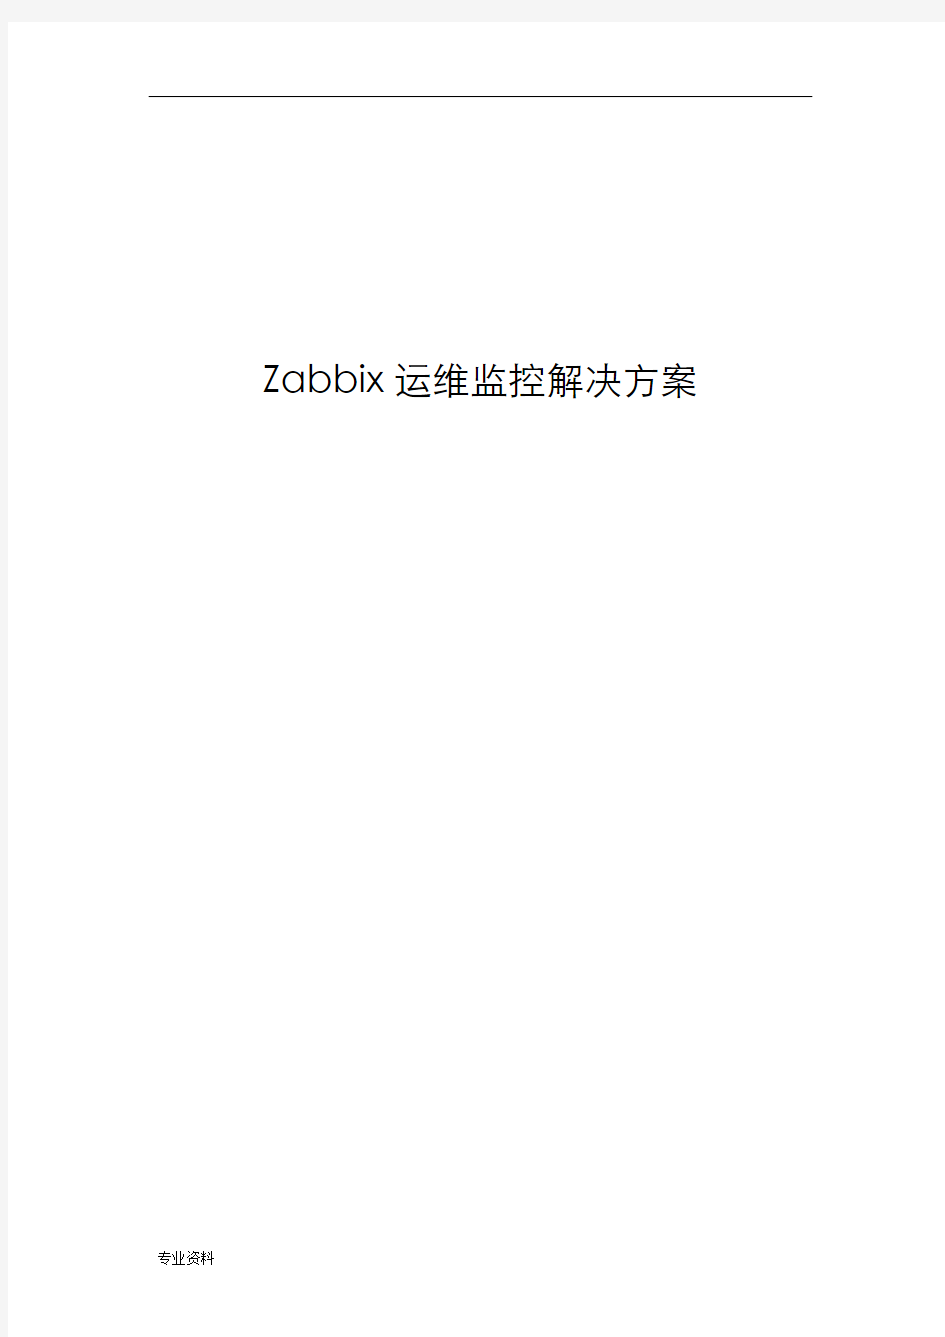 zabbix运维监控平台解决方案设计